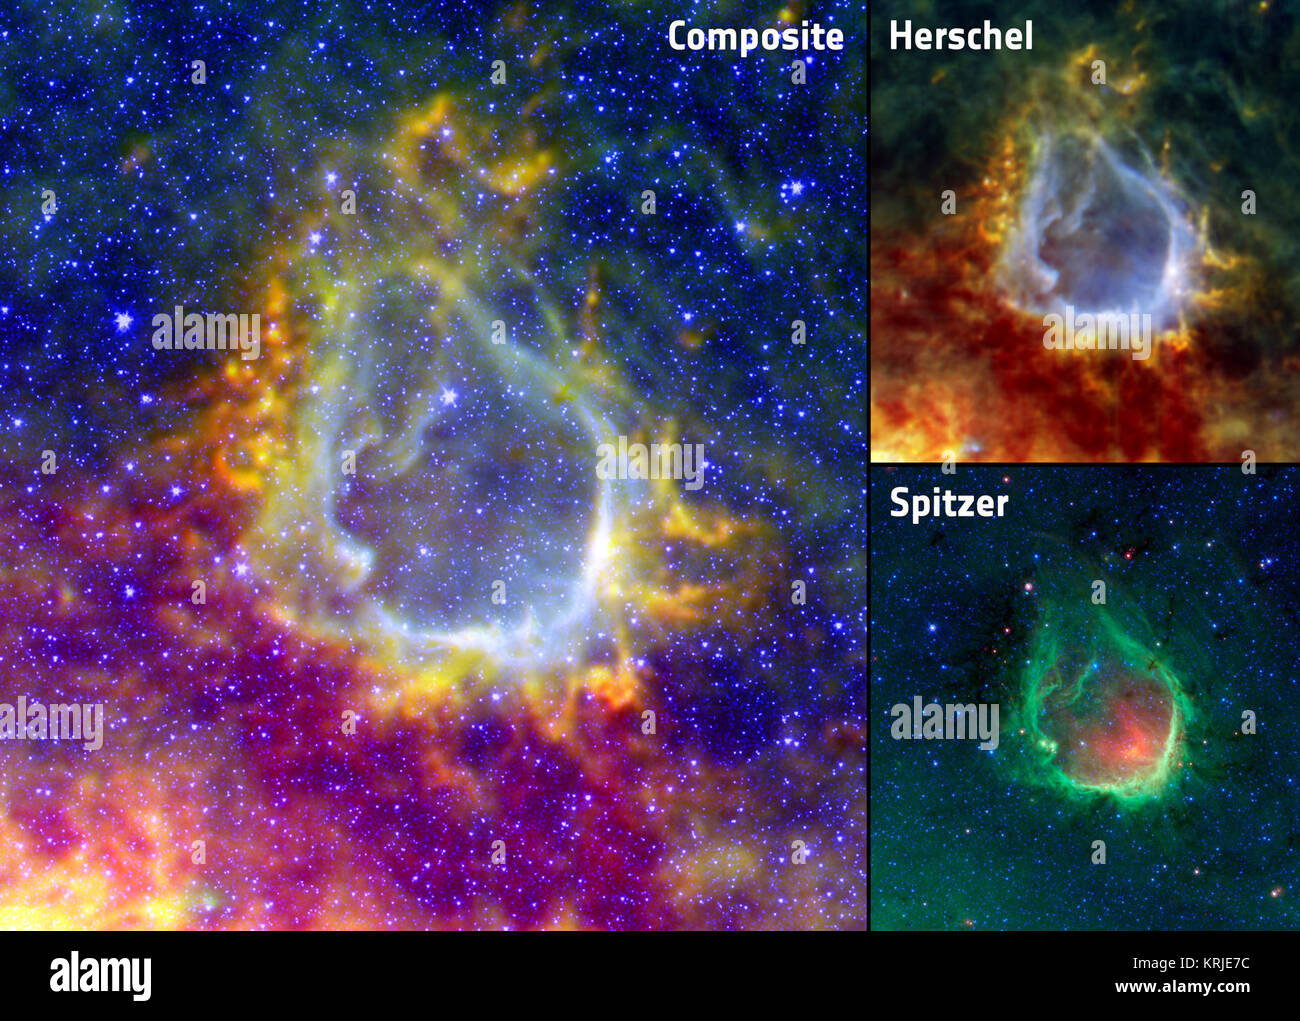 Diese drei Panel Bild zeigt ein Verbund von RCW120 mit Daten von Herschel Space Observatory und Spitzer Space Telescope. In das zusammengesetzte Bild Rot und Gelb zeigen Kühle Staub, gesehen von Herschel. Blaueren Farben zeigen wärmer Staub erkannt, die von Spitzer, als auch Sterne, die entweder vor oder hinter dem Ring. Die Kartenausschnitte zeigen die einzelnen Bilder aus den beiden Satelliten. Ringe von Infrarot Collage Stockfoto